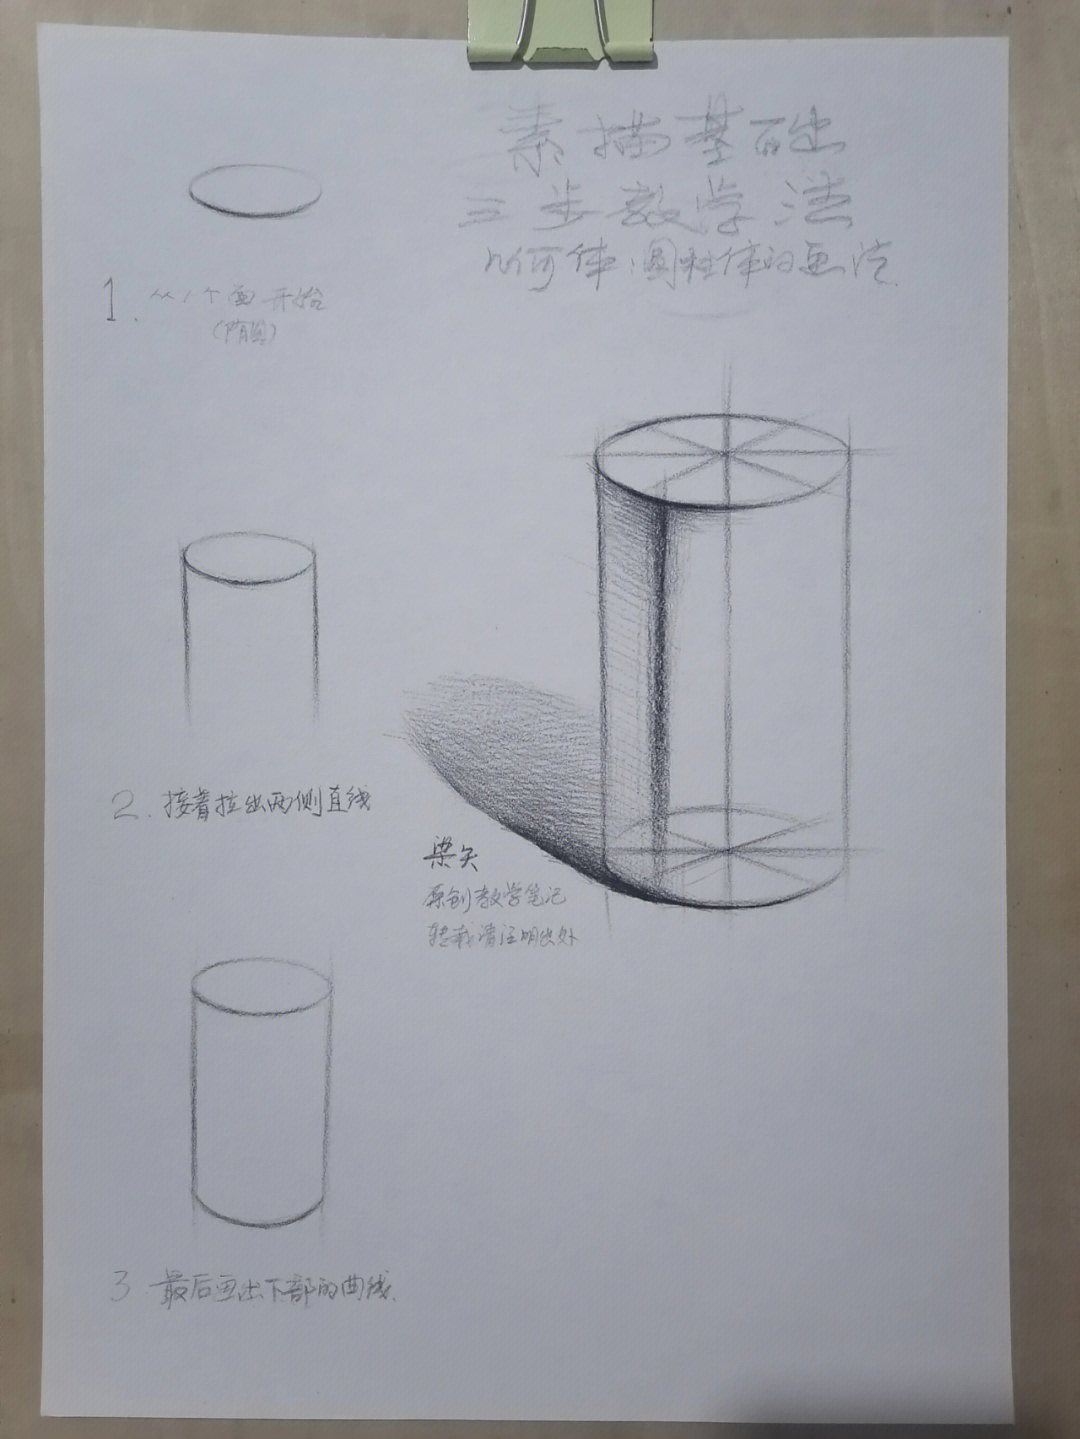 素描基础简简单单三步画一个几何圆柱体